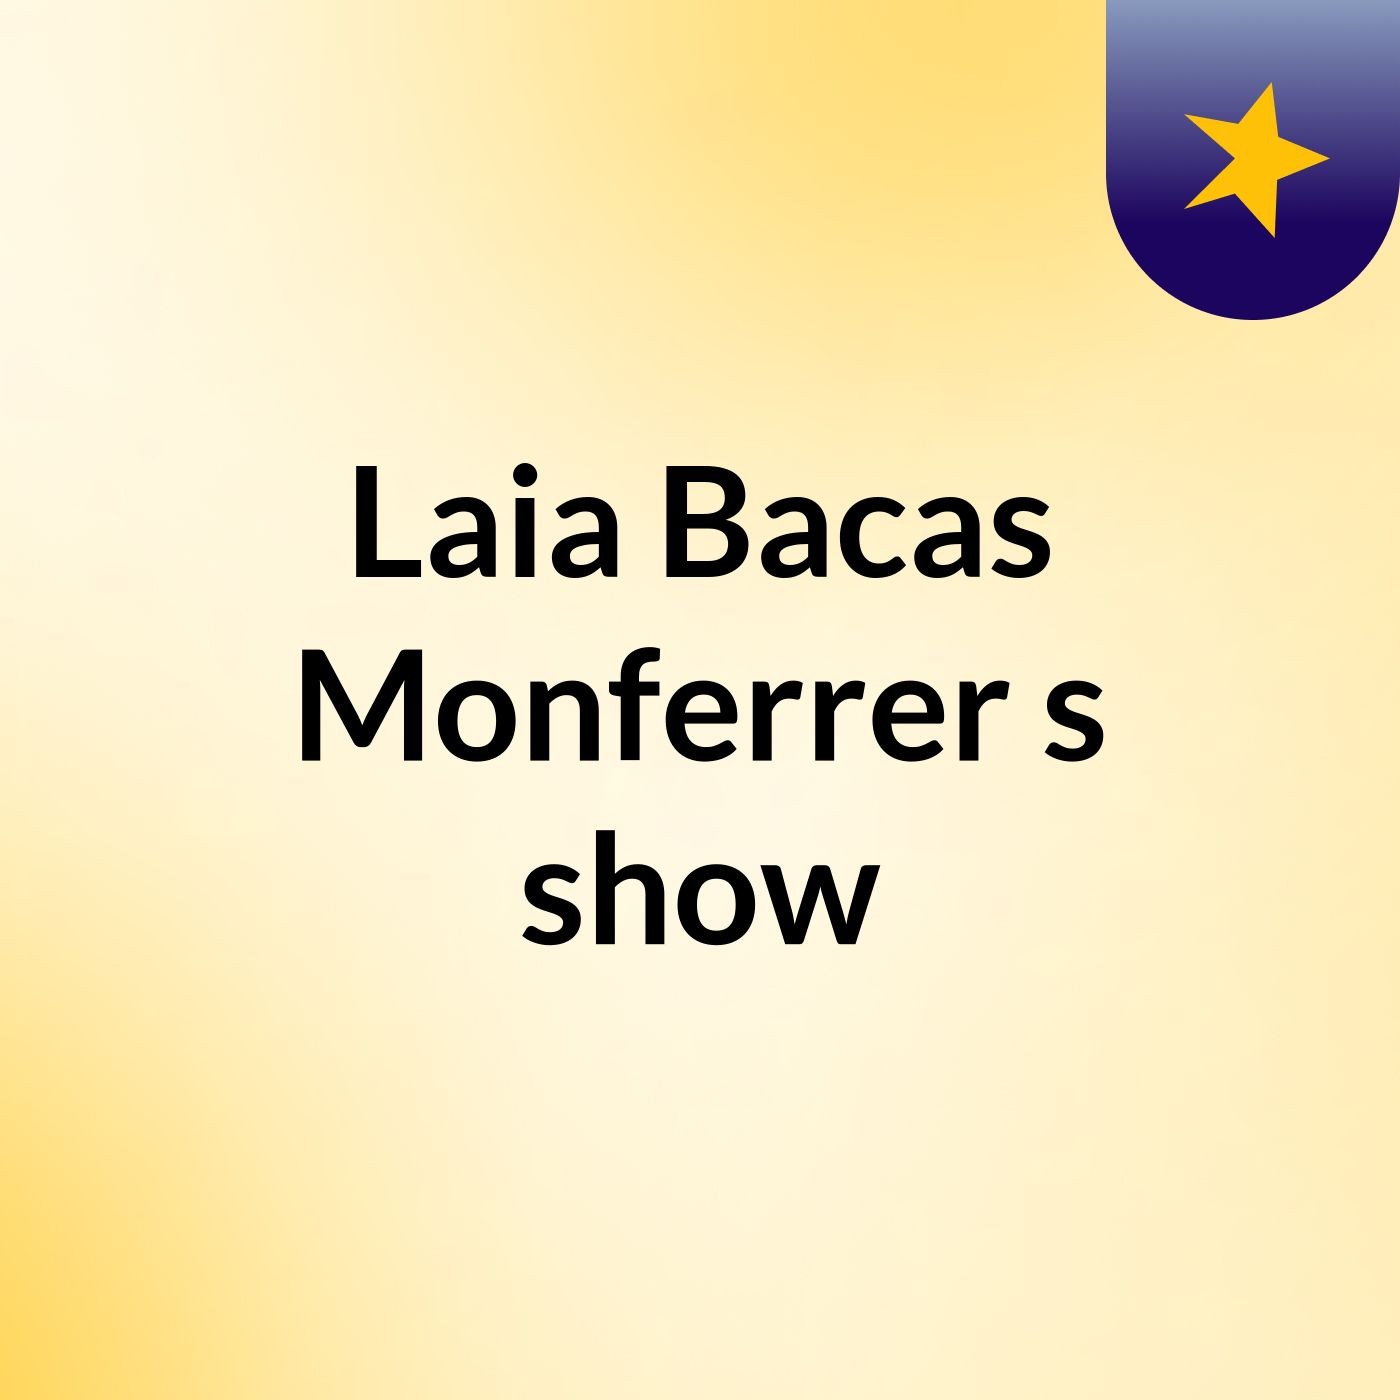 Laia Bacas Monferrer's show